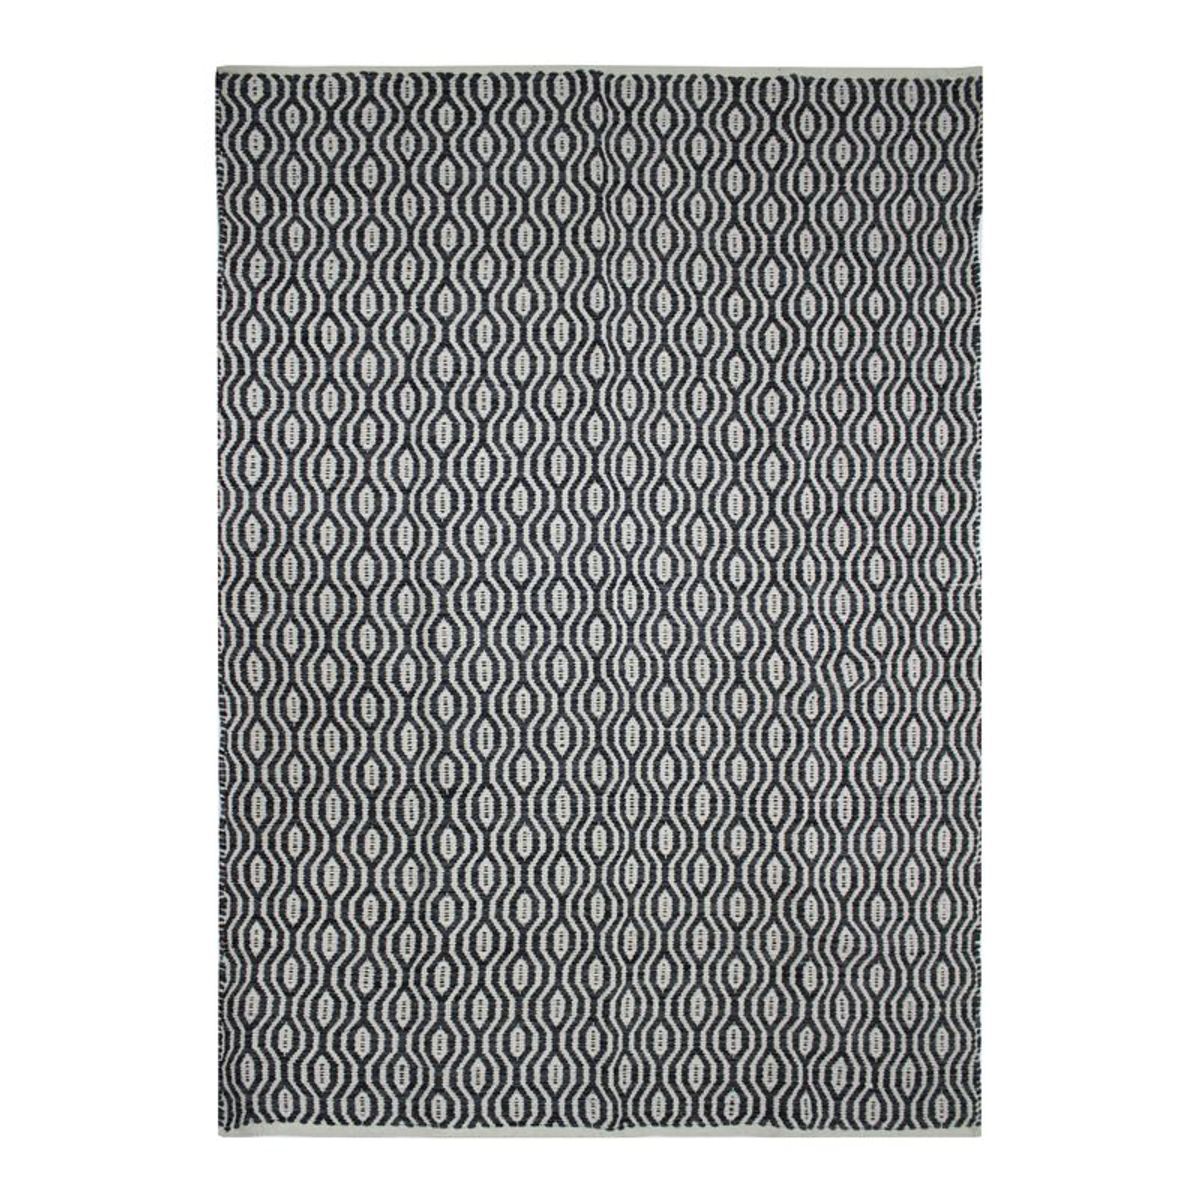 Tapis 100% coton géométrique écru-noir 120x170